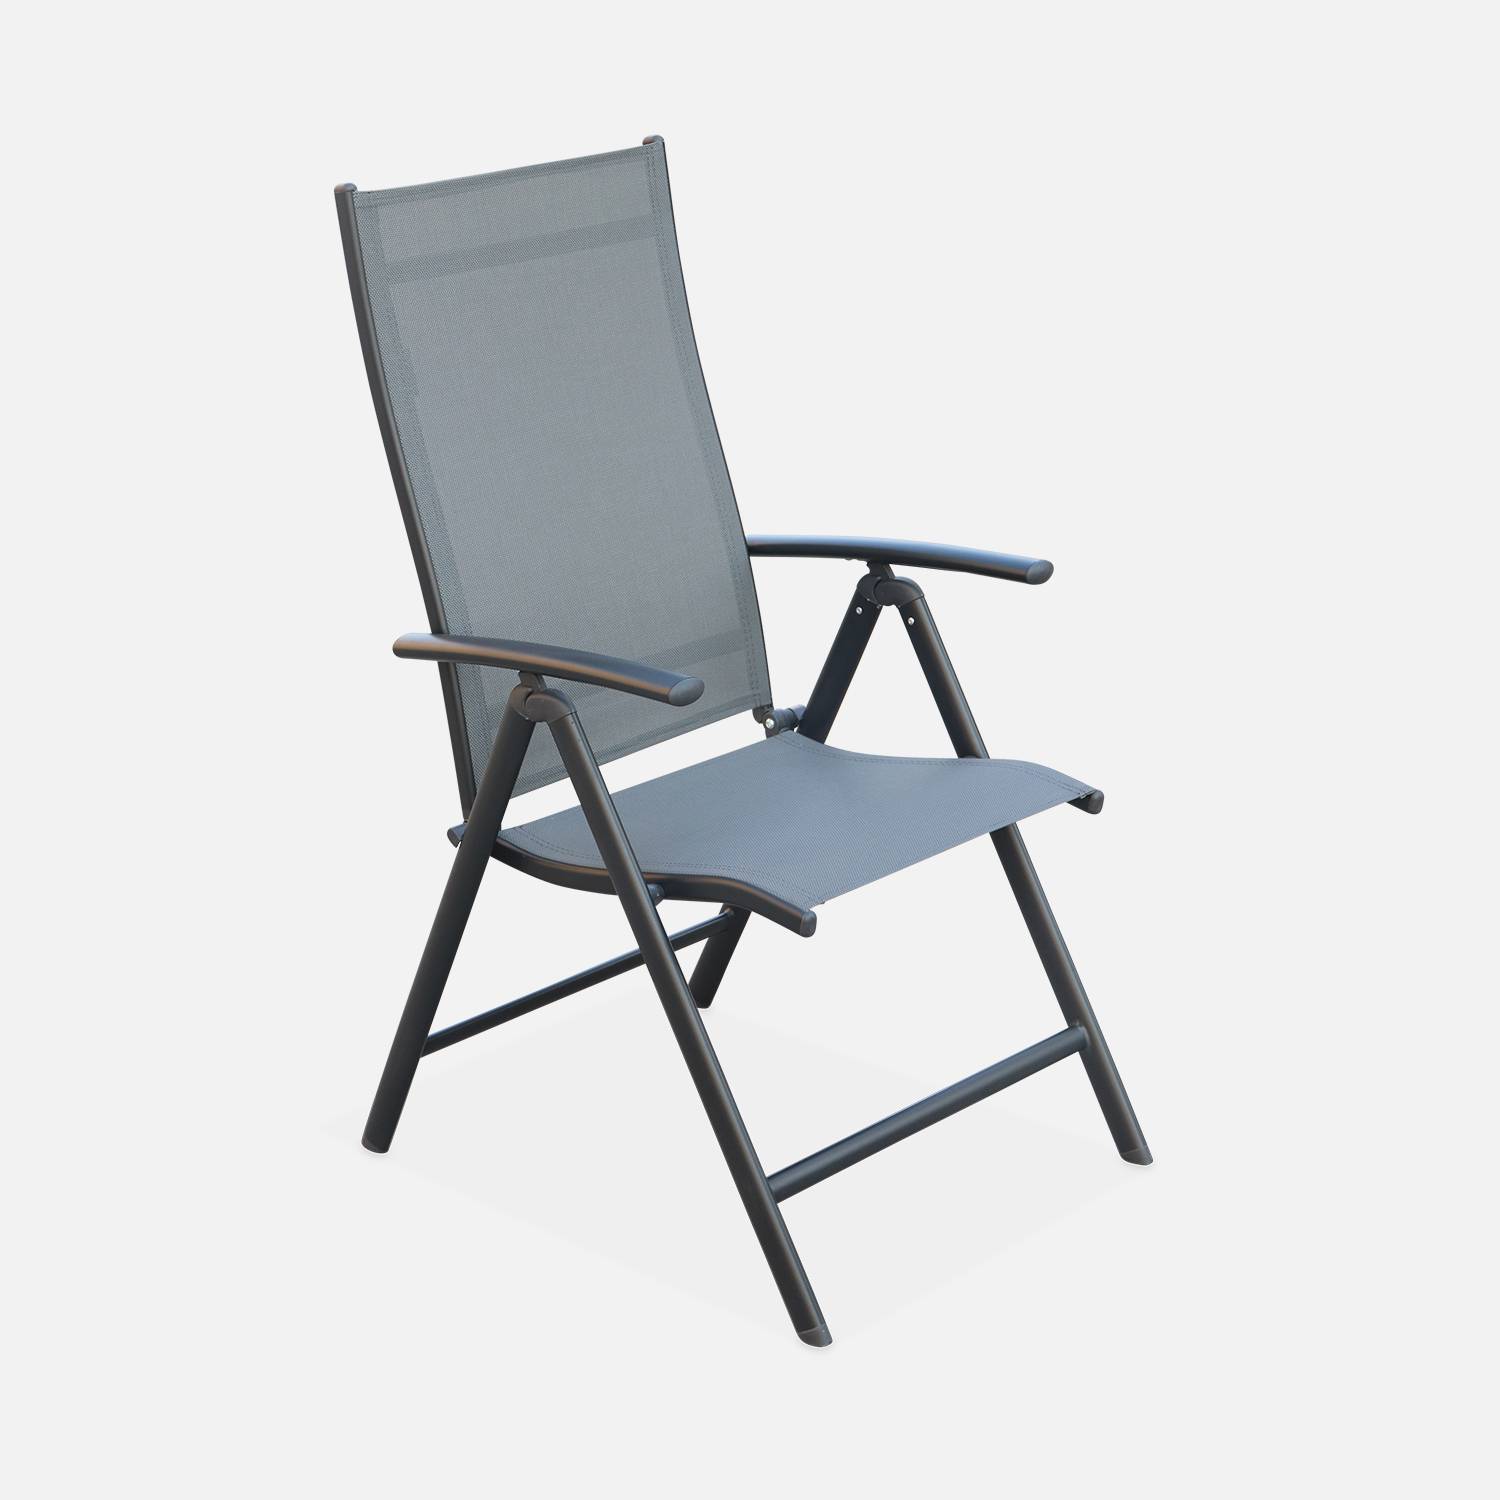 Salon de jardin en aluminium et textilène - Naevia - Gris, Anthracite - 8 places - 1 grande table rectangulaire, 8 fauteuils pliables Photo4